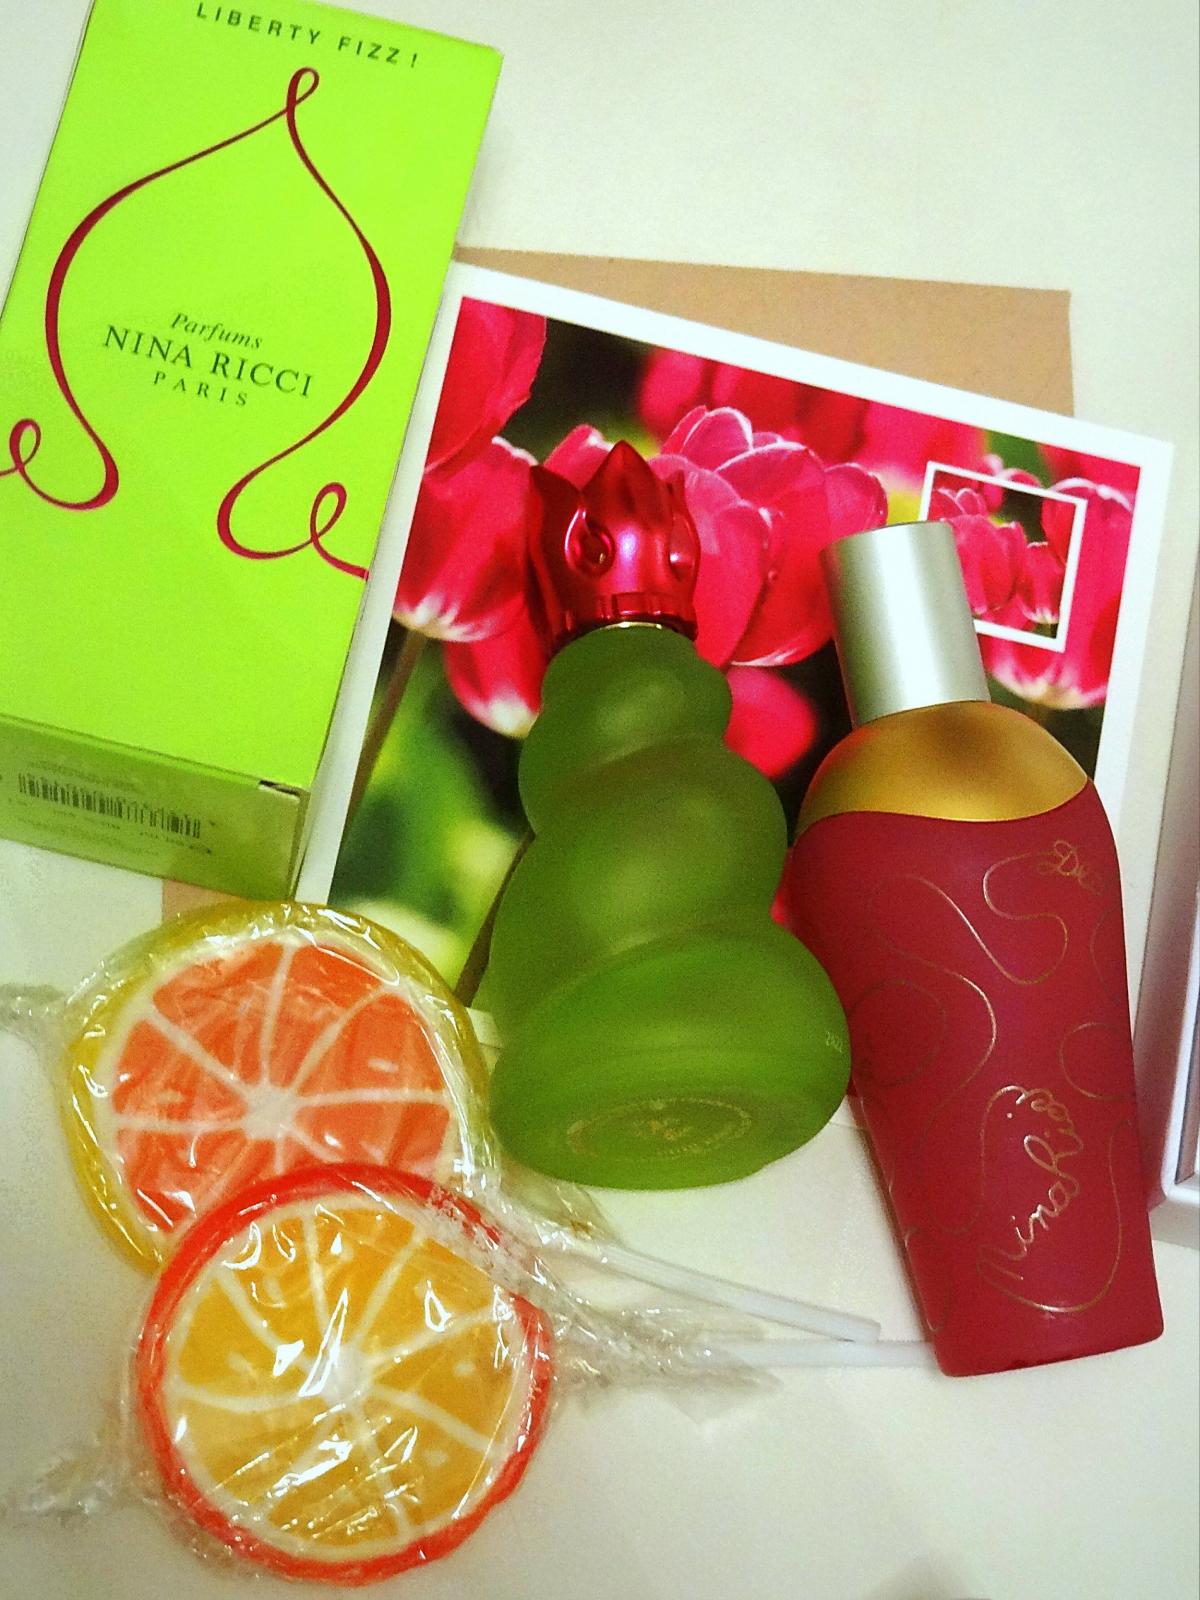 Les Belles de Ricci Liberty Fizz Nina Ricci perfume - a fragrance for